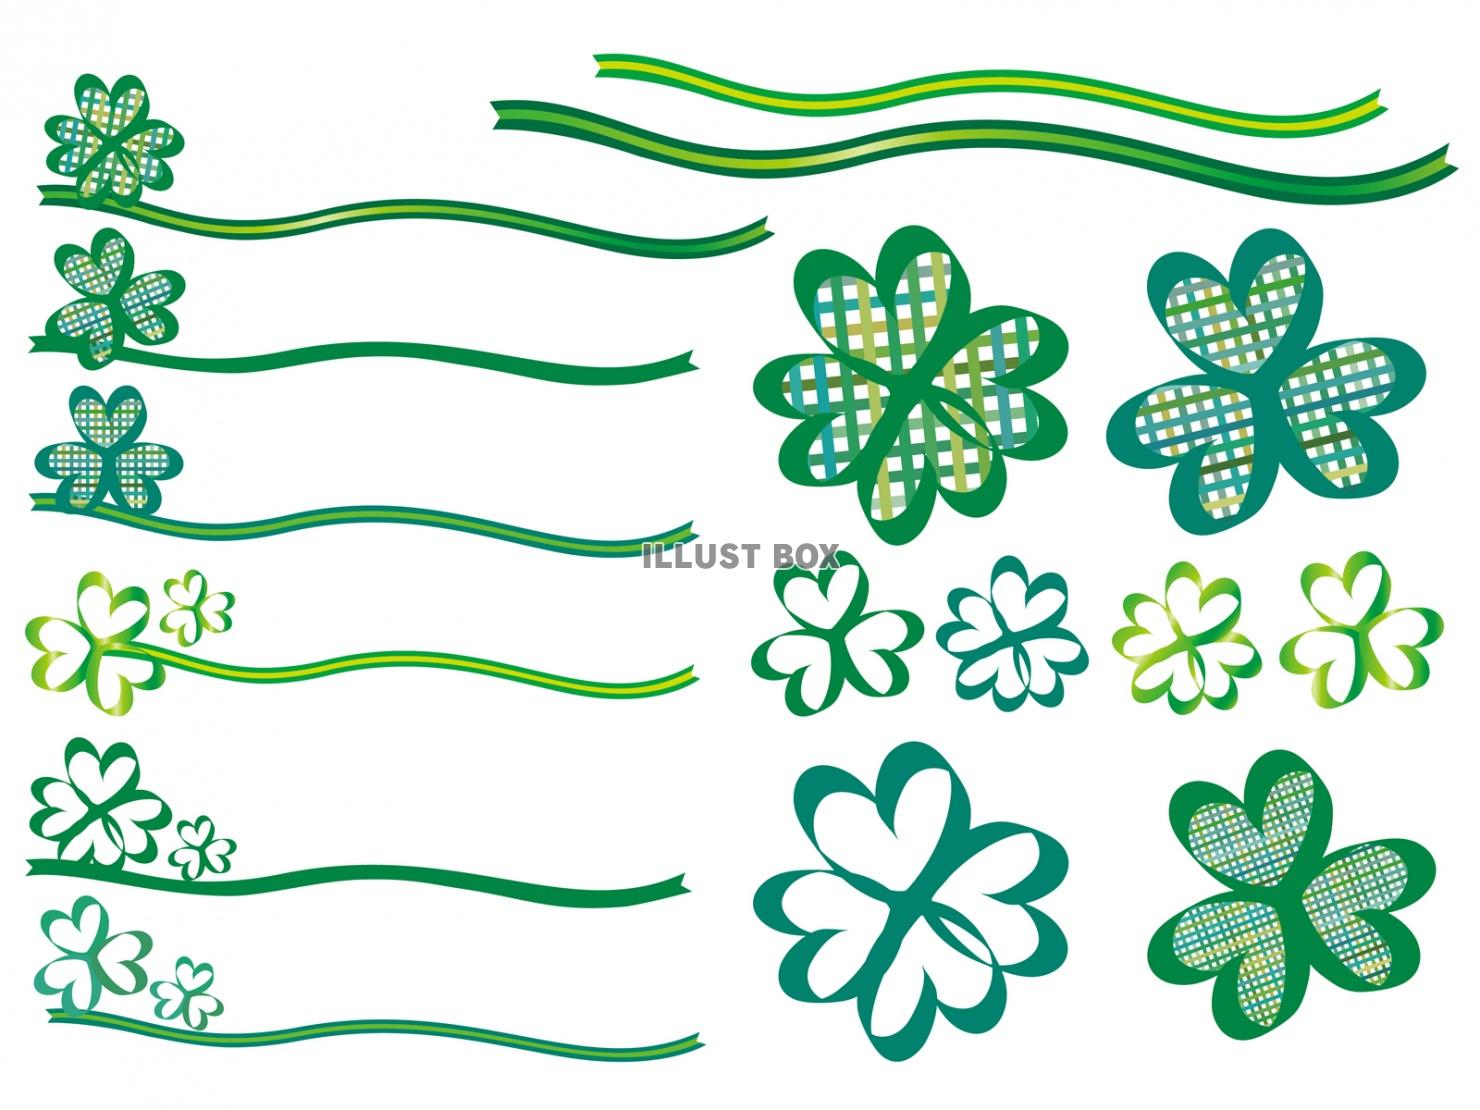 無料イラスト クローバー飾り葉っぱ小見出しリボン装飾ライン緑色グリーン枠チ